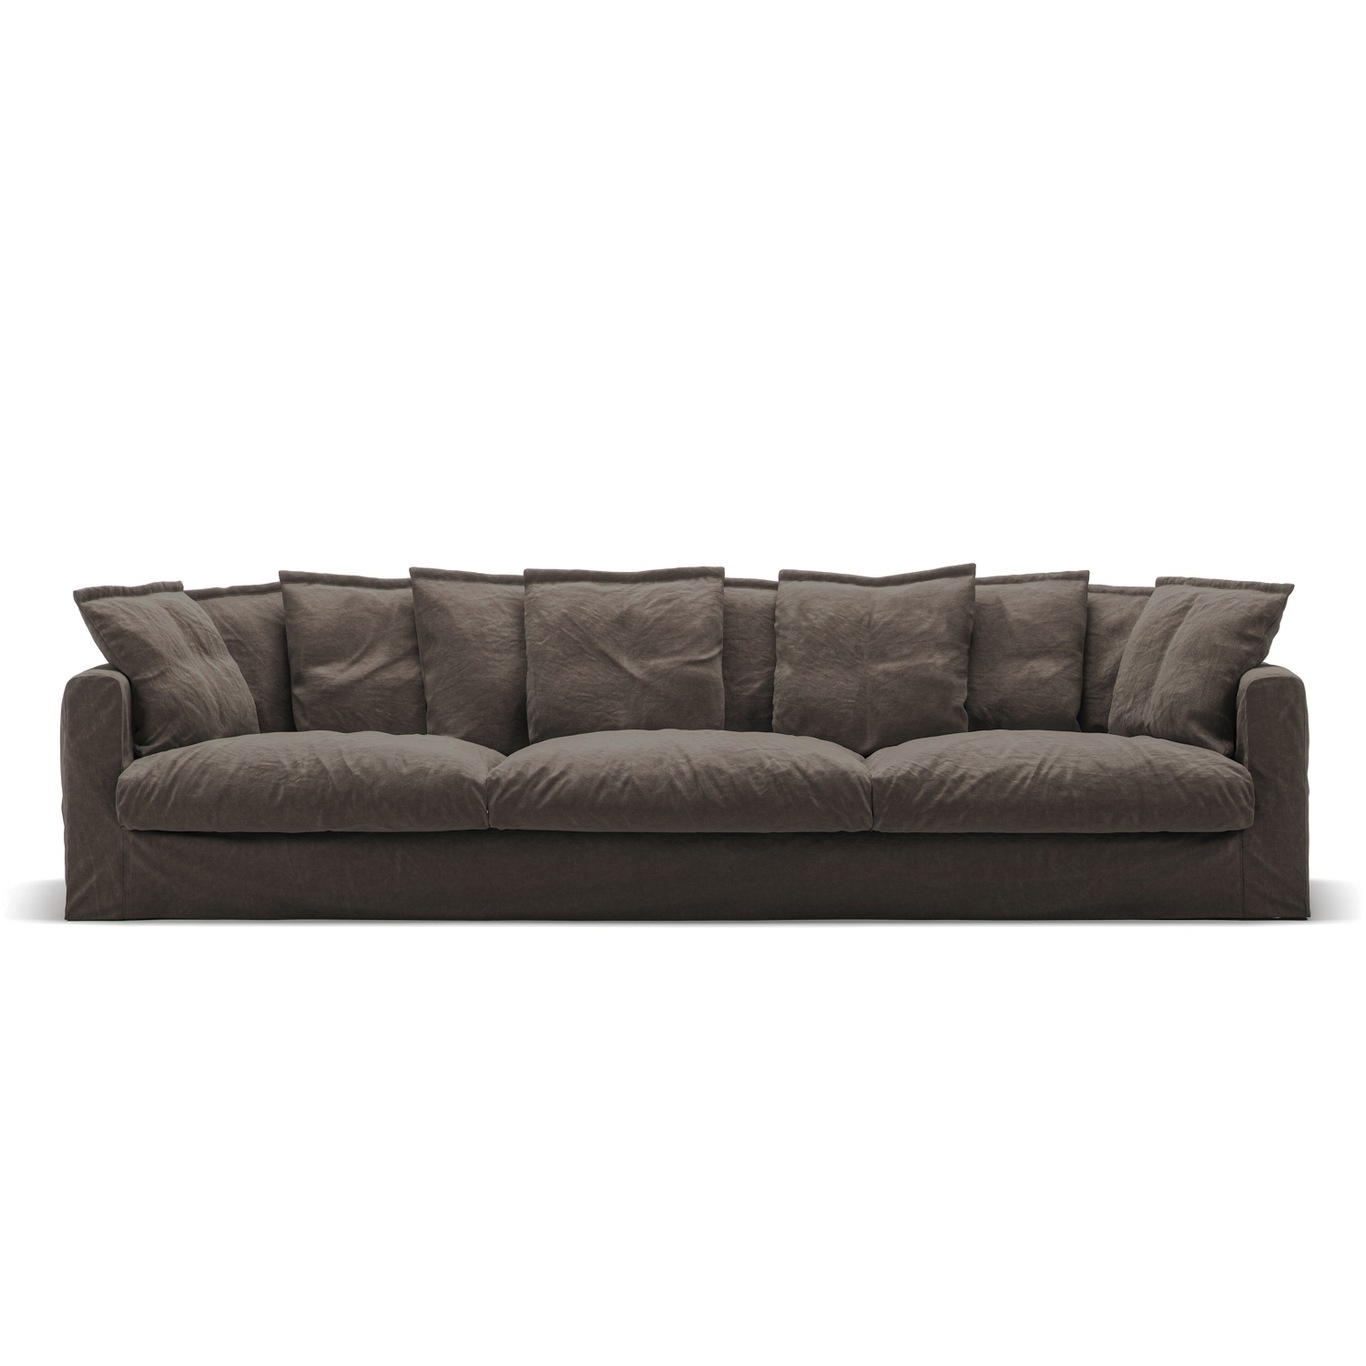 Le Grand Air 5 Seater Sofa Linen, Truffle Brown